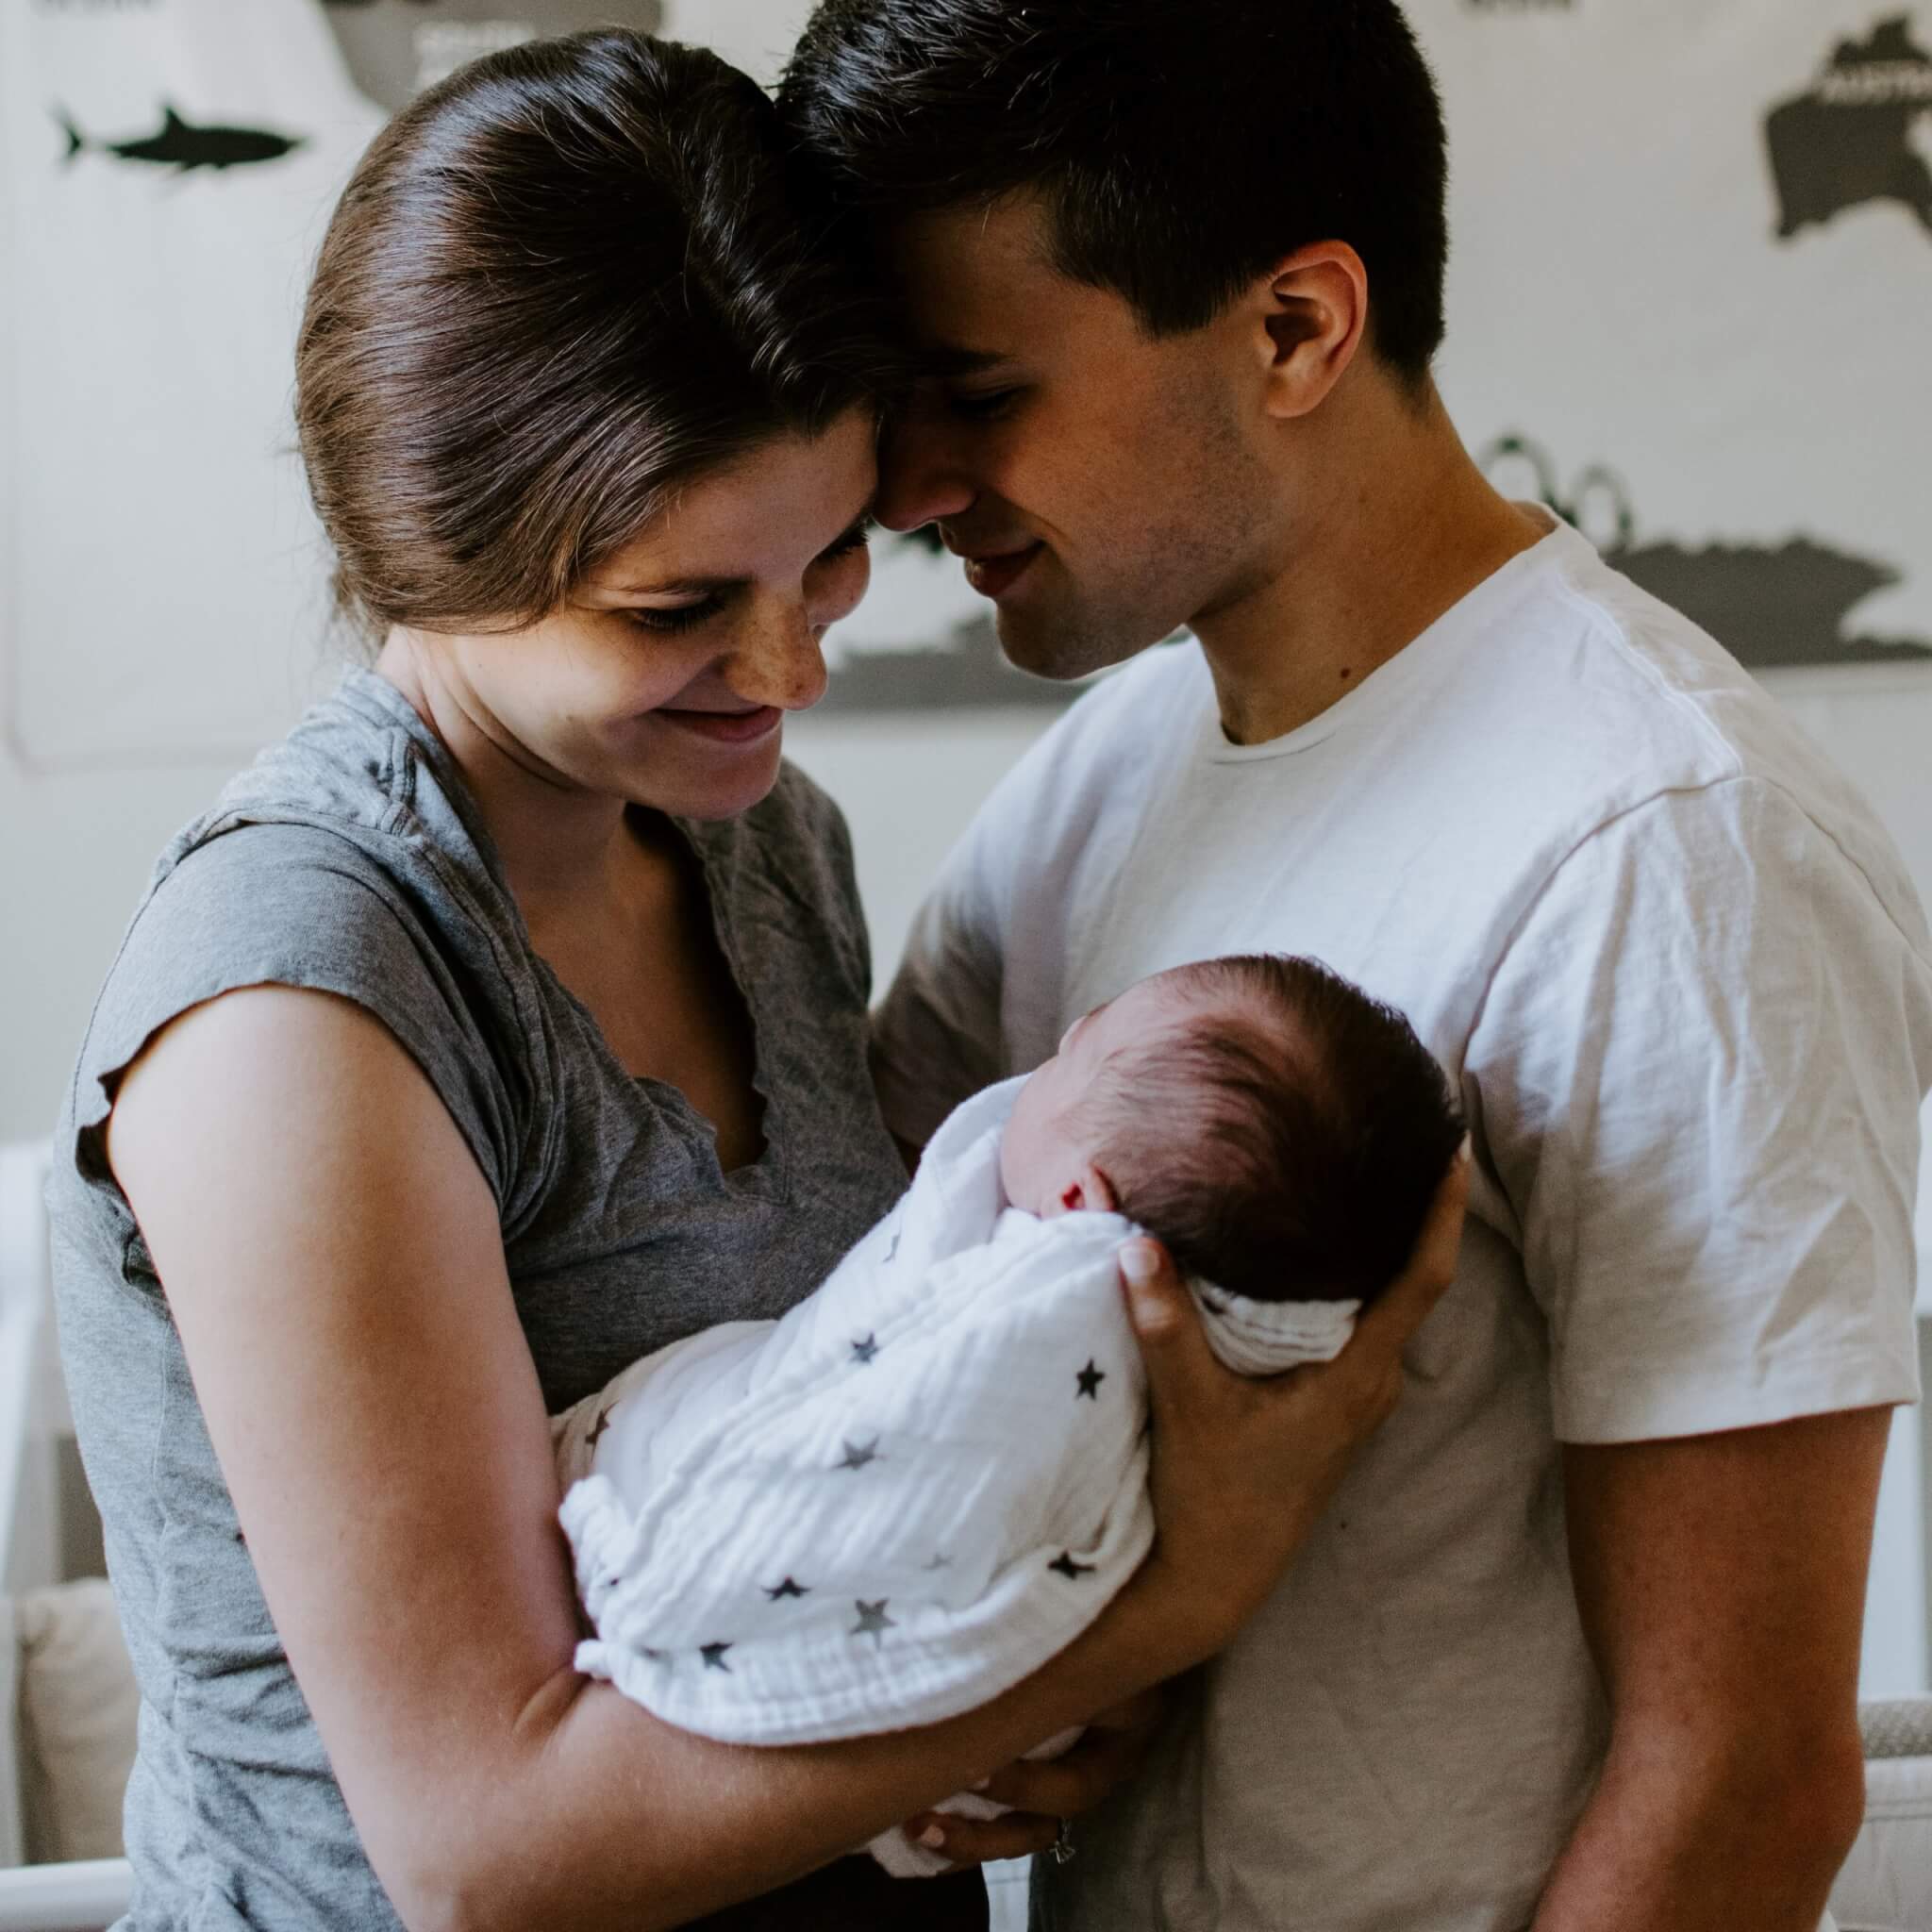 postpartum care